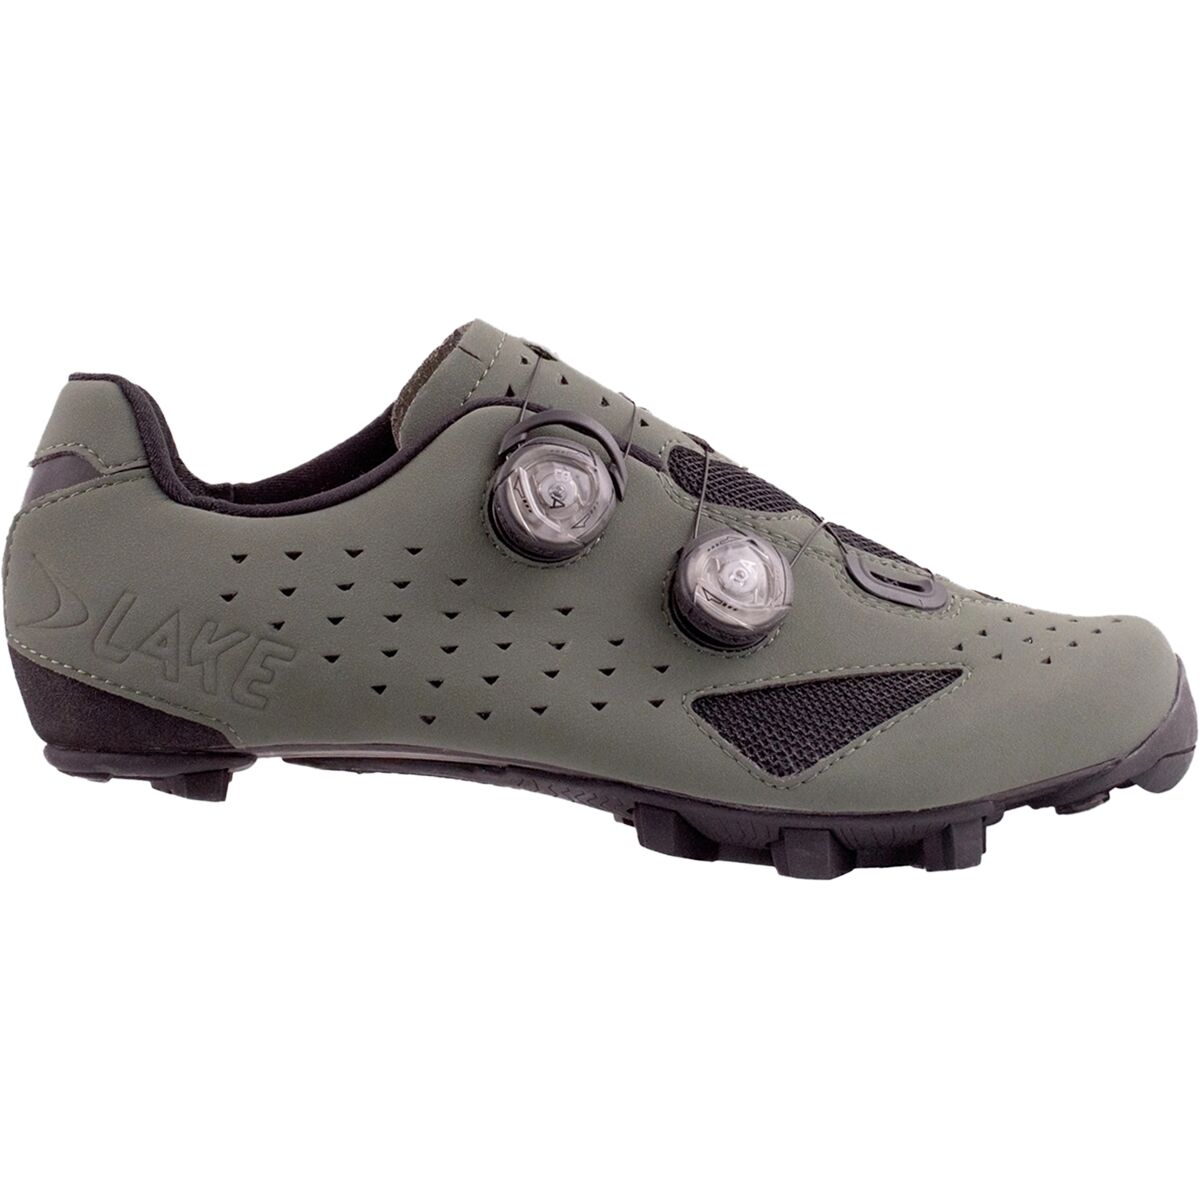 Lake MX238 Gravel Cycling Shoe - Men's